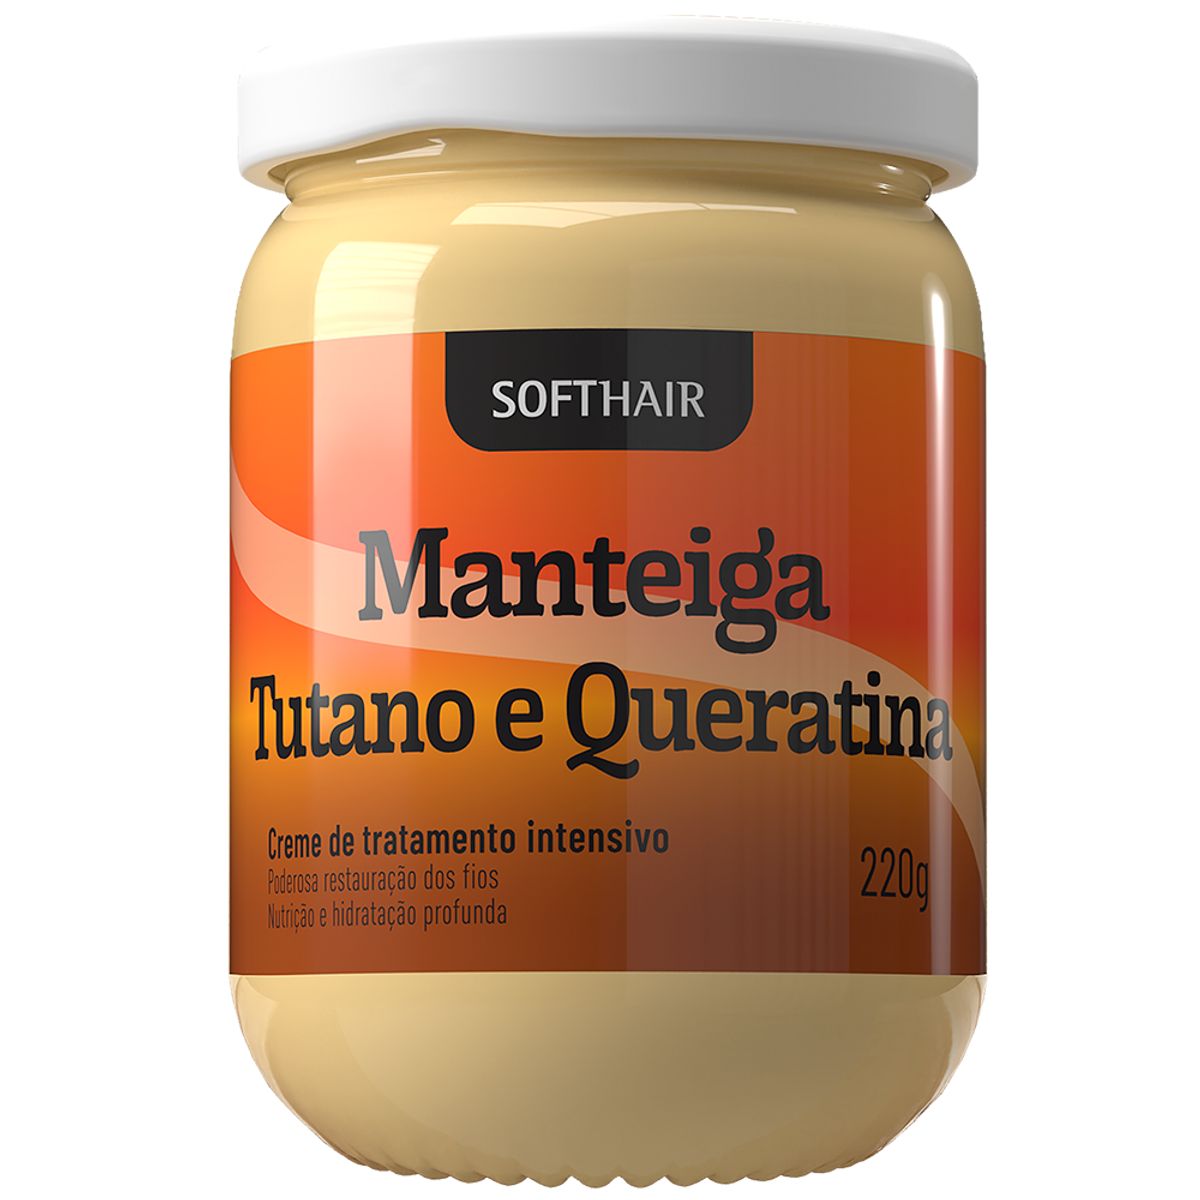 Creme de Tratamento Intensivo Softhair Manteiga, Tutano e Queratina 220g